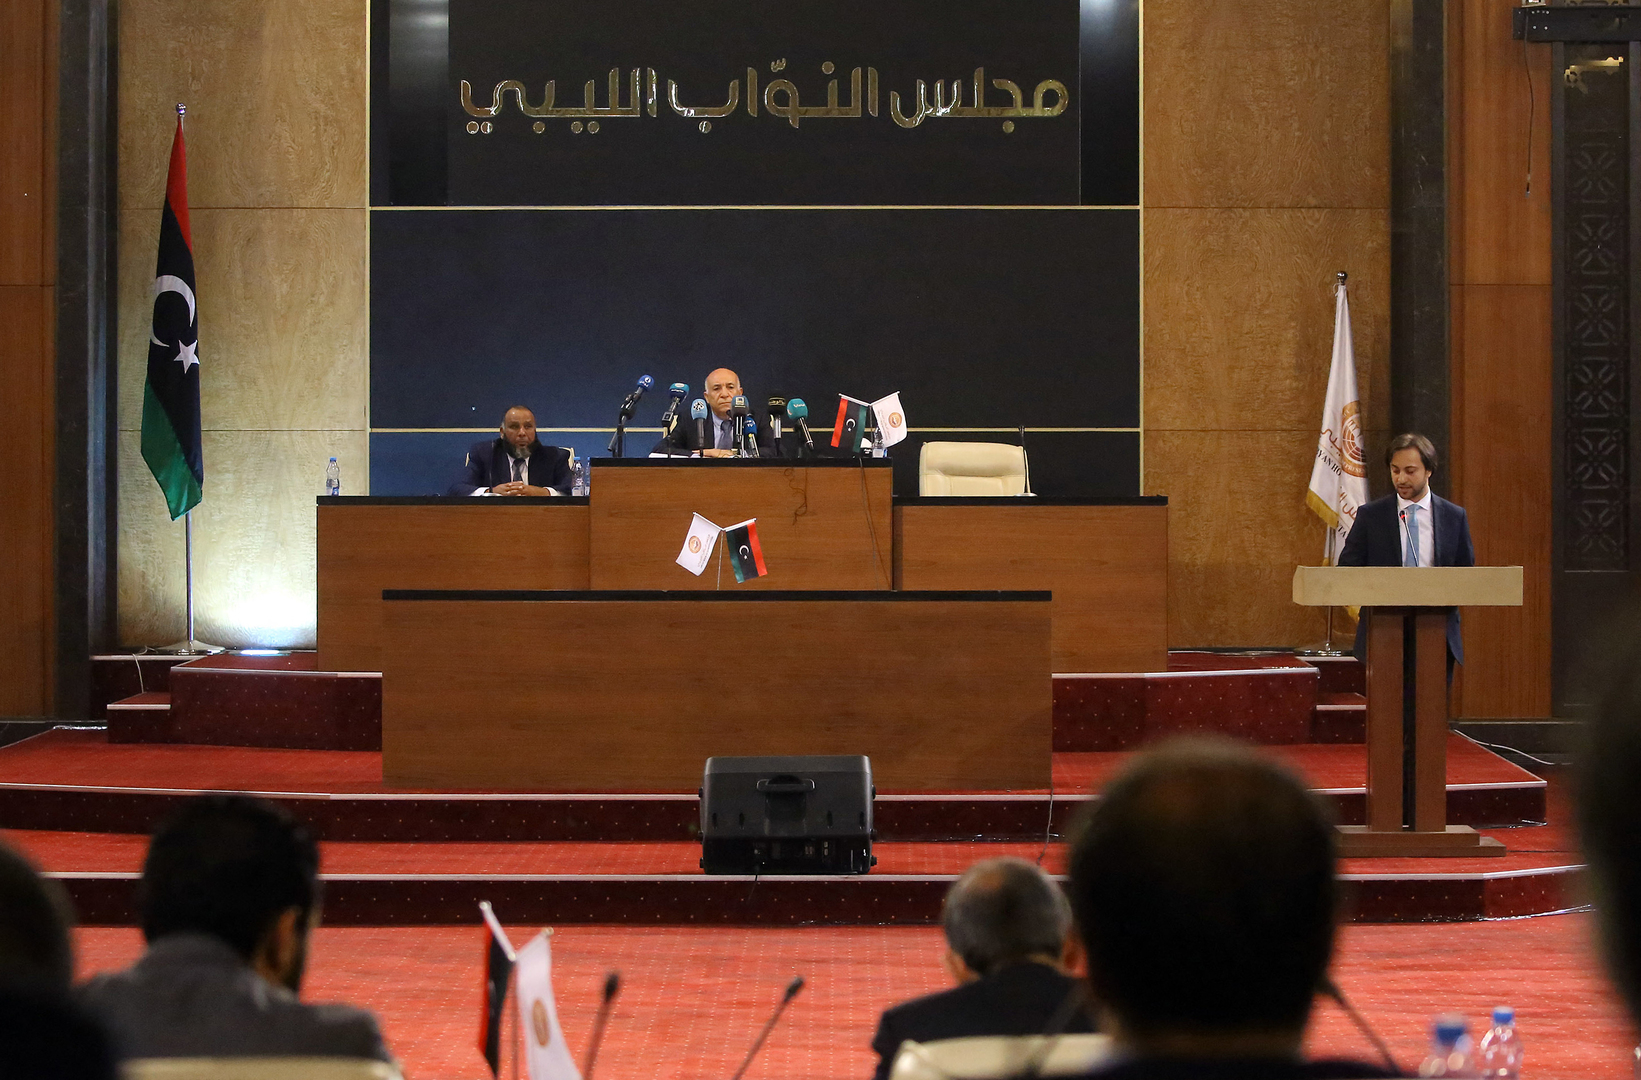 مراسلنا: مجلس النواب الليبي يقرر الاجتماع في سرت لمنح الثقة للحكومة الجديدة